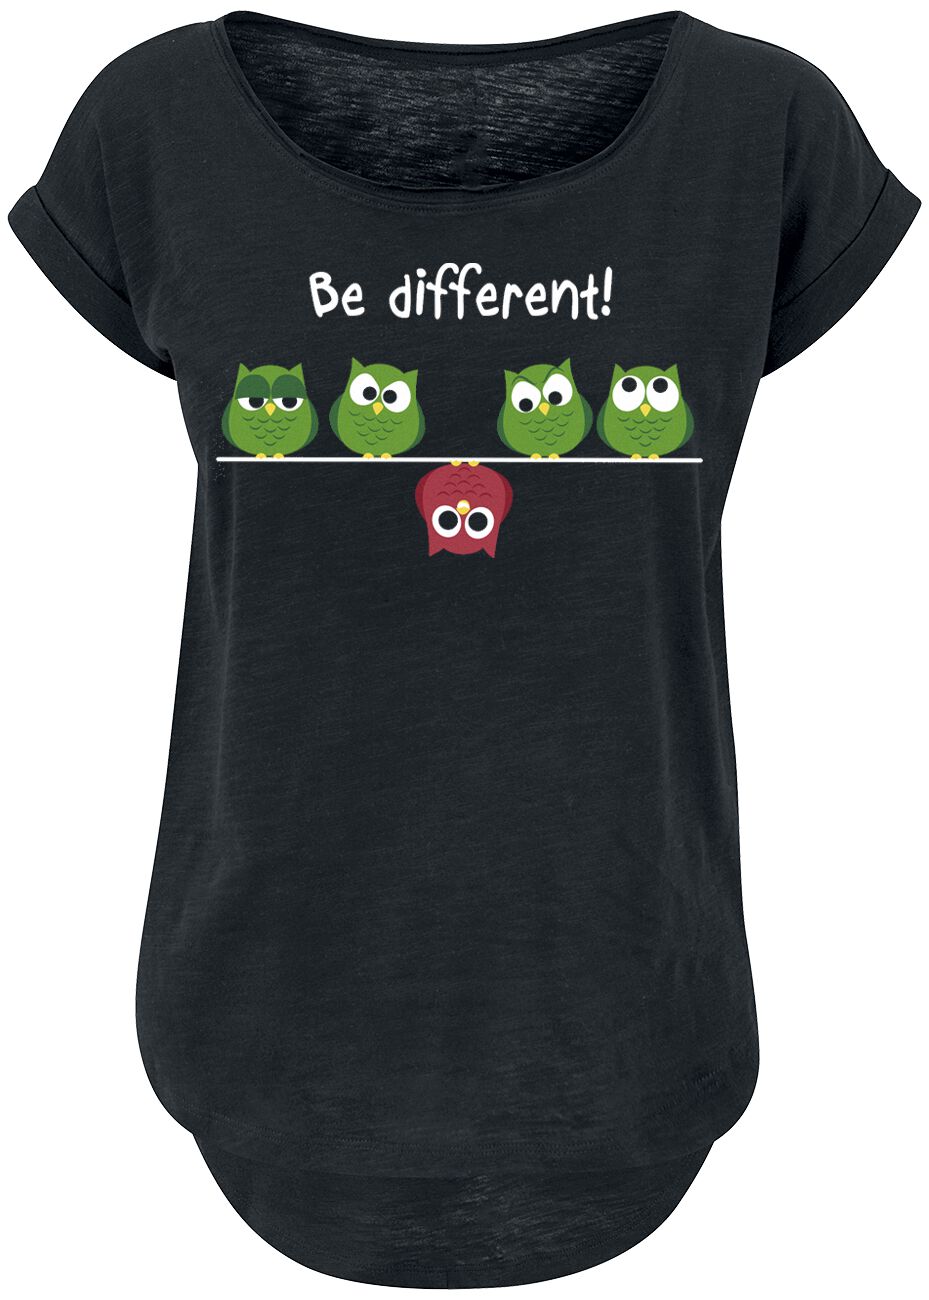 T-Shirt Manches courtes Fun de Be Different! - - XS à 4XL - pour Femme - noir